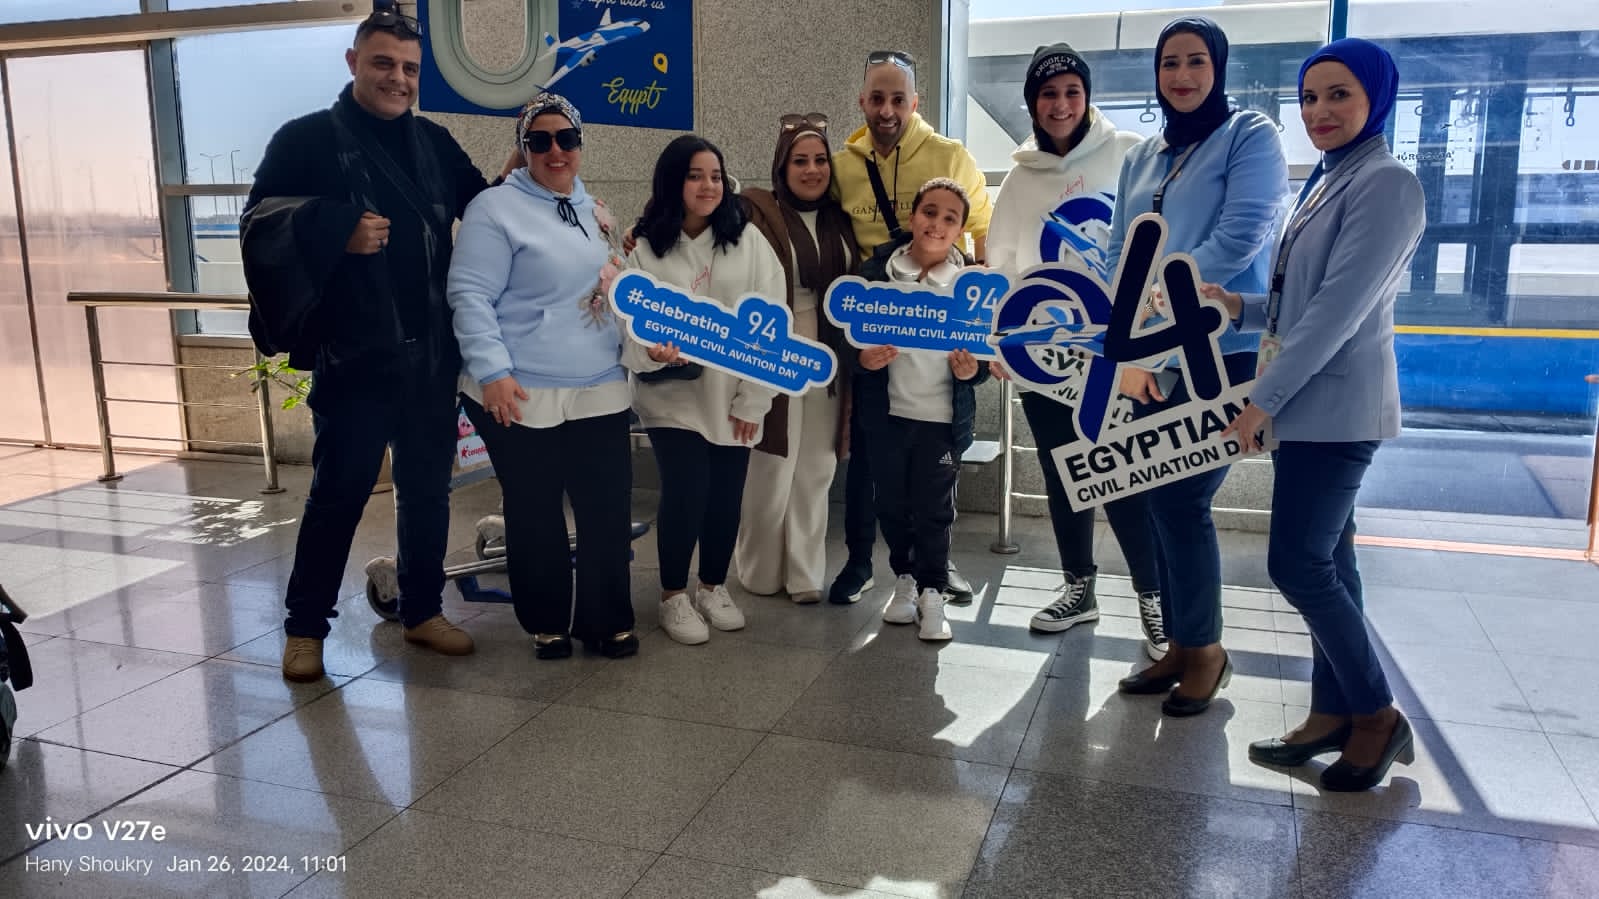 وزارة الطيران المدنى وشركاتها التابعة تحتفل بعيد الطيران المدنى المصري الـ ٩٤